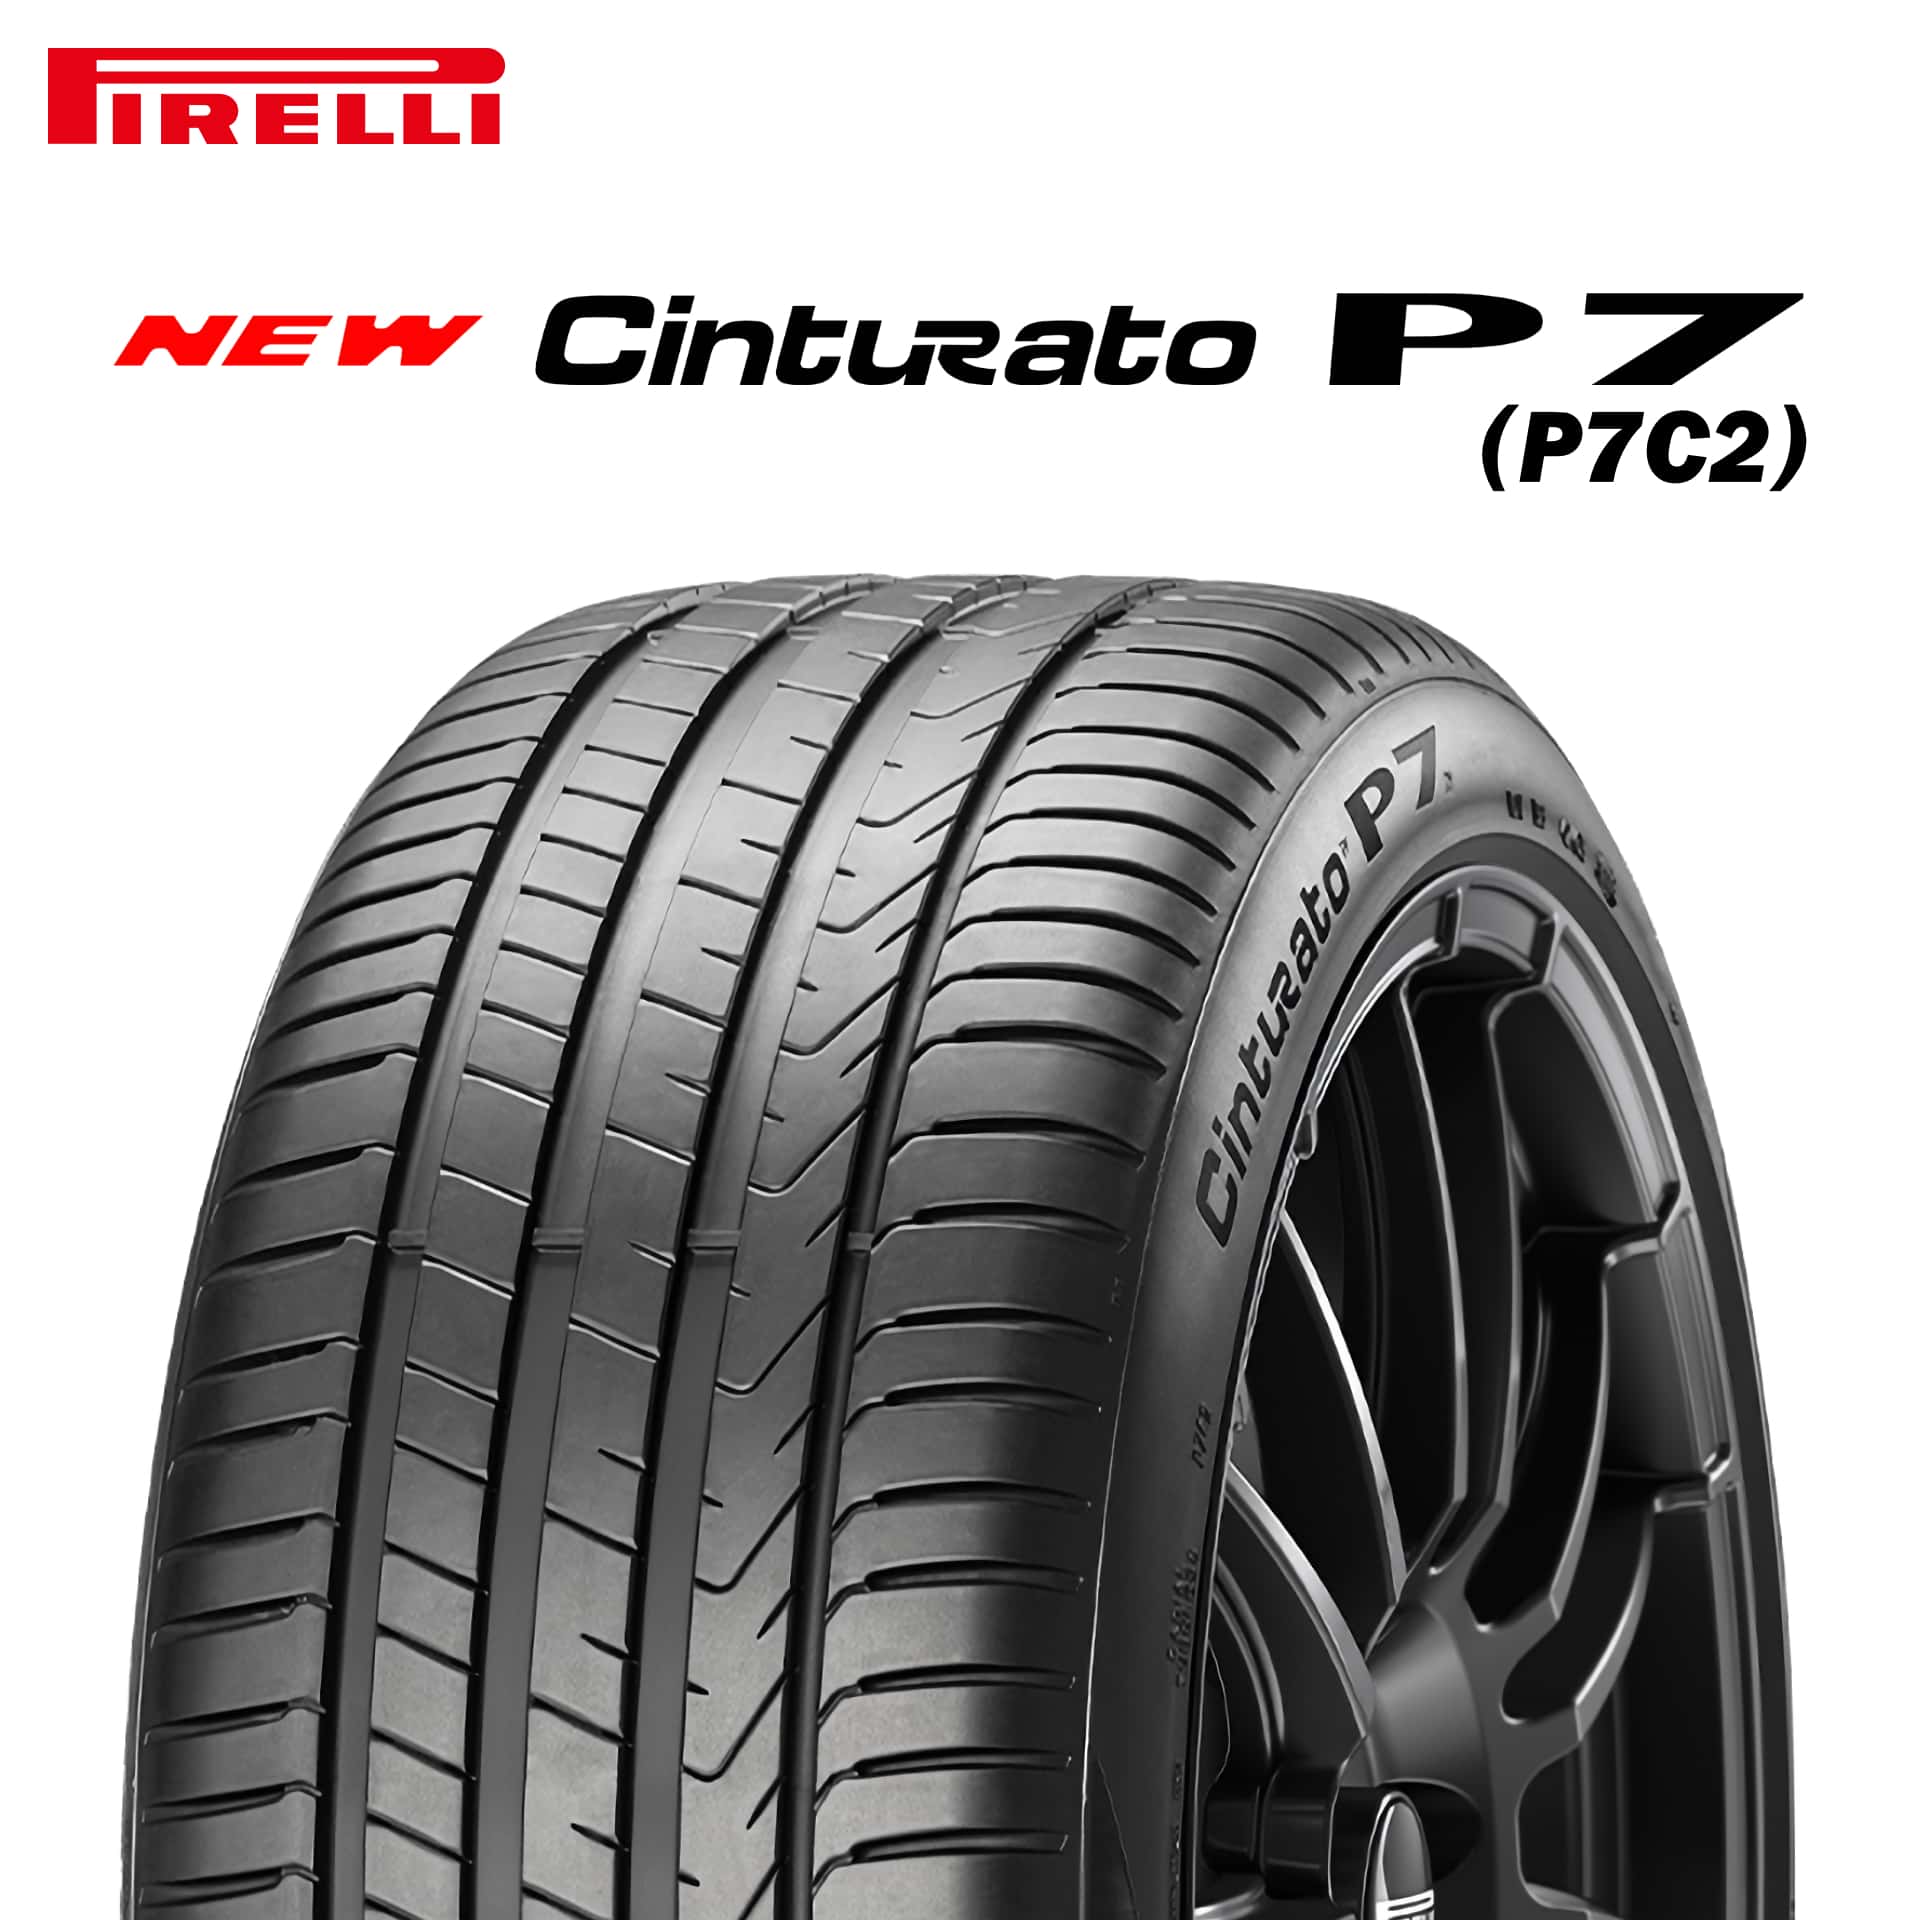 23年製 245/40R18 97Y XL MO ピレリ Cinturato P7 (P7C2) チントゥラートP7 メルセデスベンツ承認タイヤ 単品